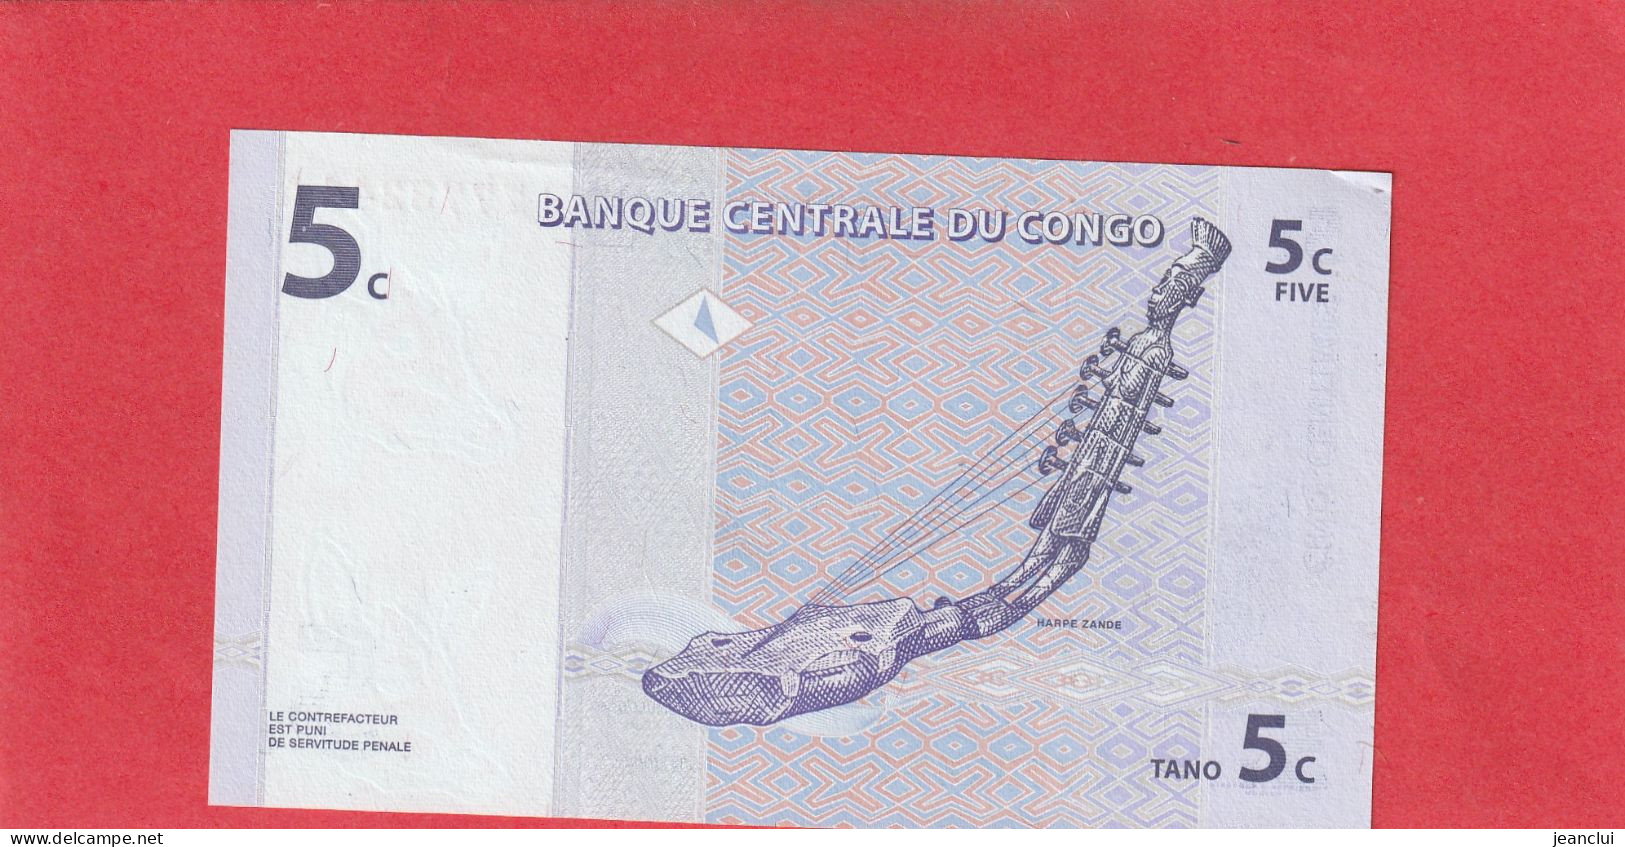 BANQUE CENTRALE DU CONGO  .  5 CENTIMES  .  01-11-1997  .  N°  B 7773244 A  .  BILLET EN TRES BEL ETAT  .  2 SCANNES - Democratic Republic Of The Congo & Zaire